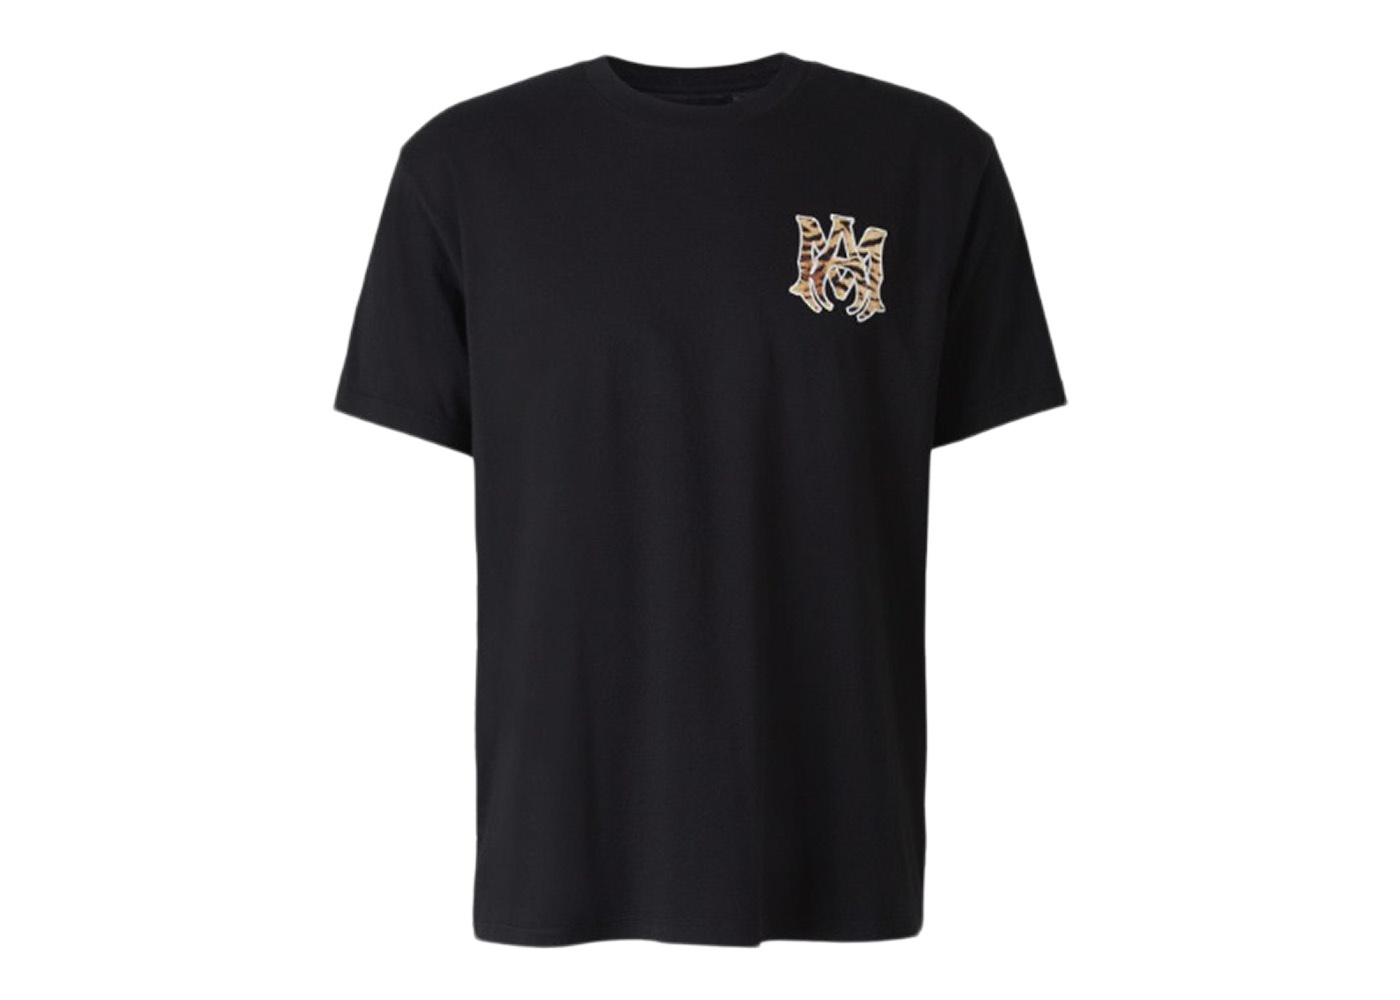 AMIRI Tiger Luna New Year MA T-Shirt Black/Tiger Print Men's